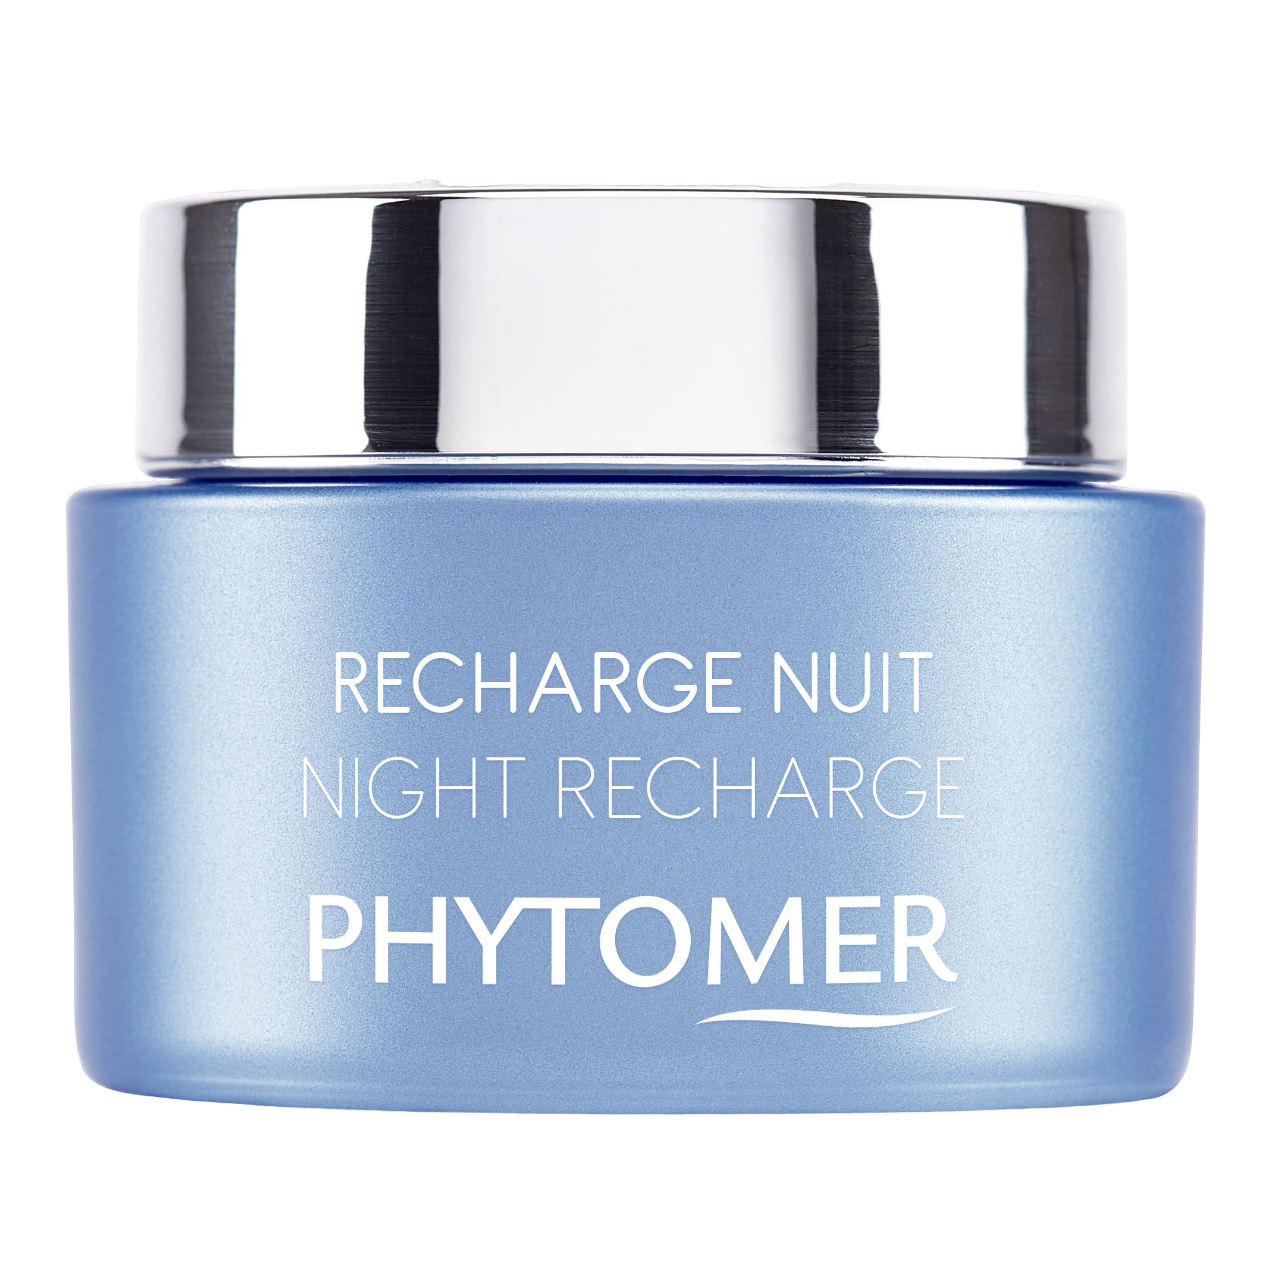 Восстанавливающий ночной крем Phytomer Night Recharge, 50 мл - фото 1